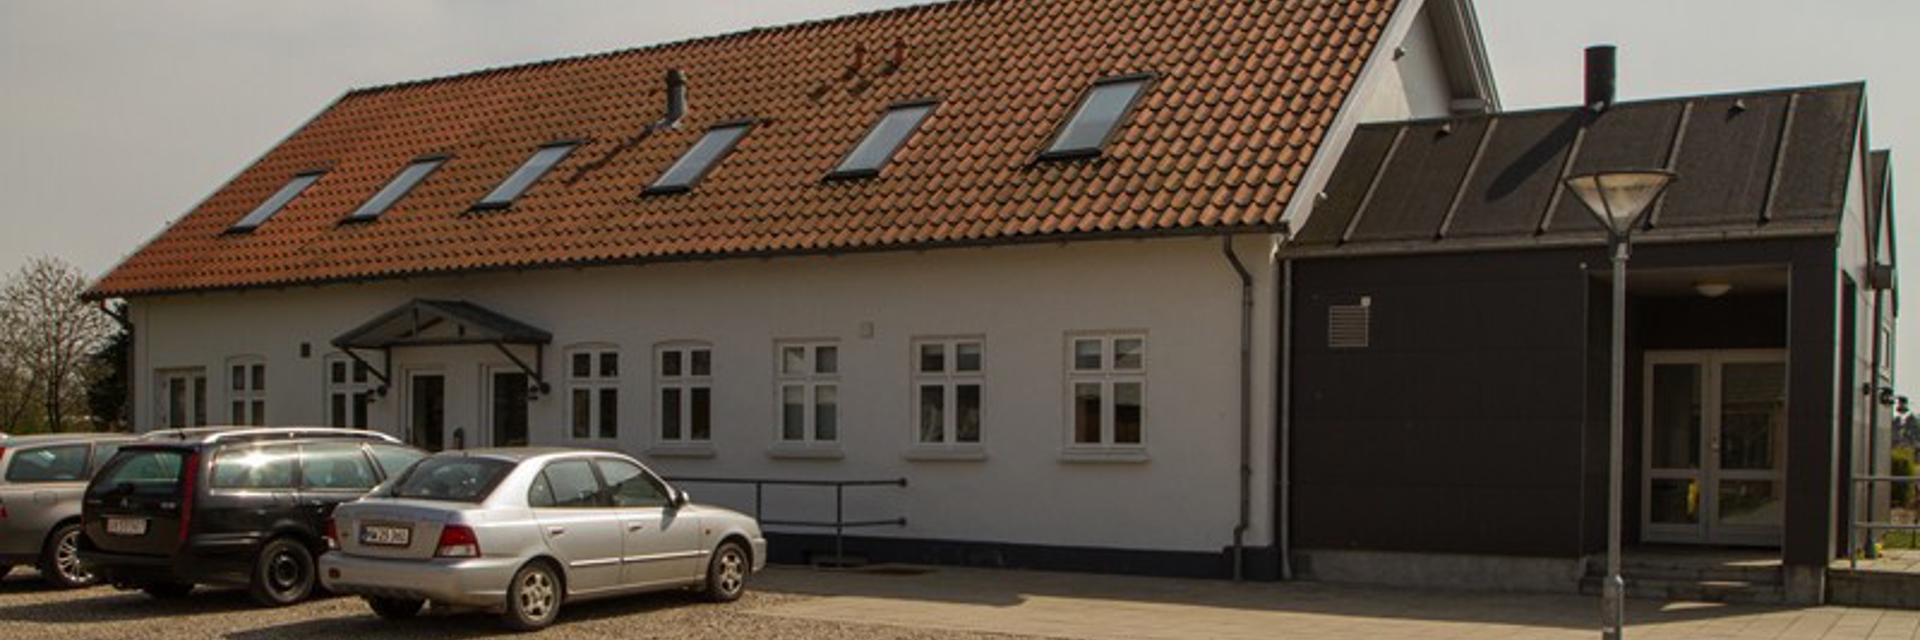 Rhedersborg medarbejder hus